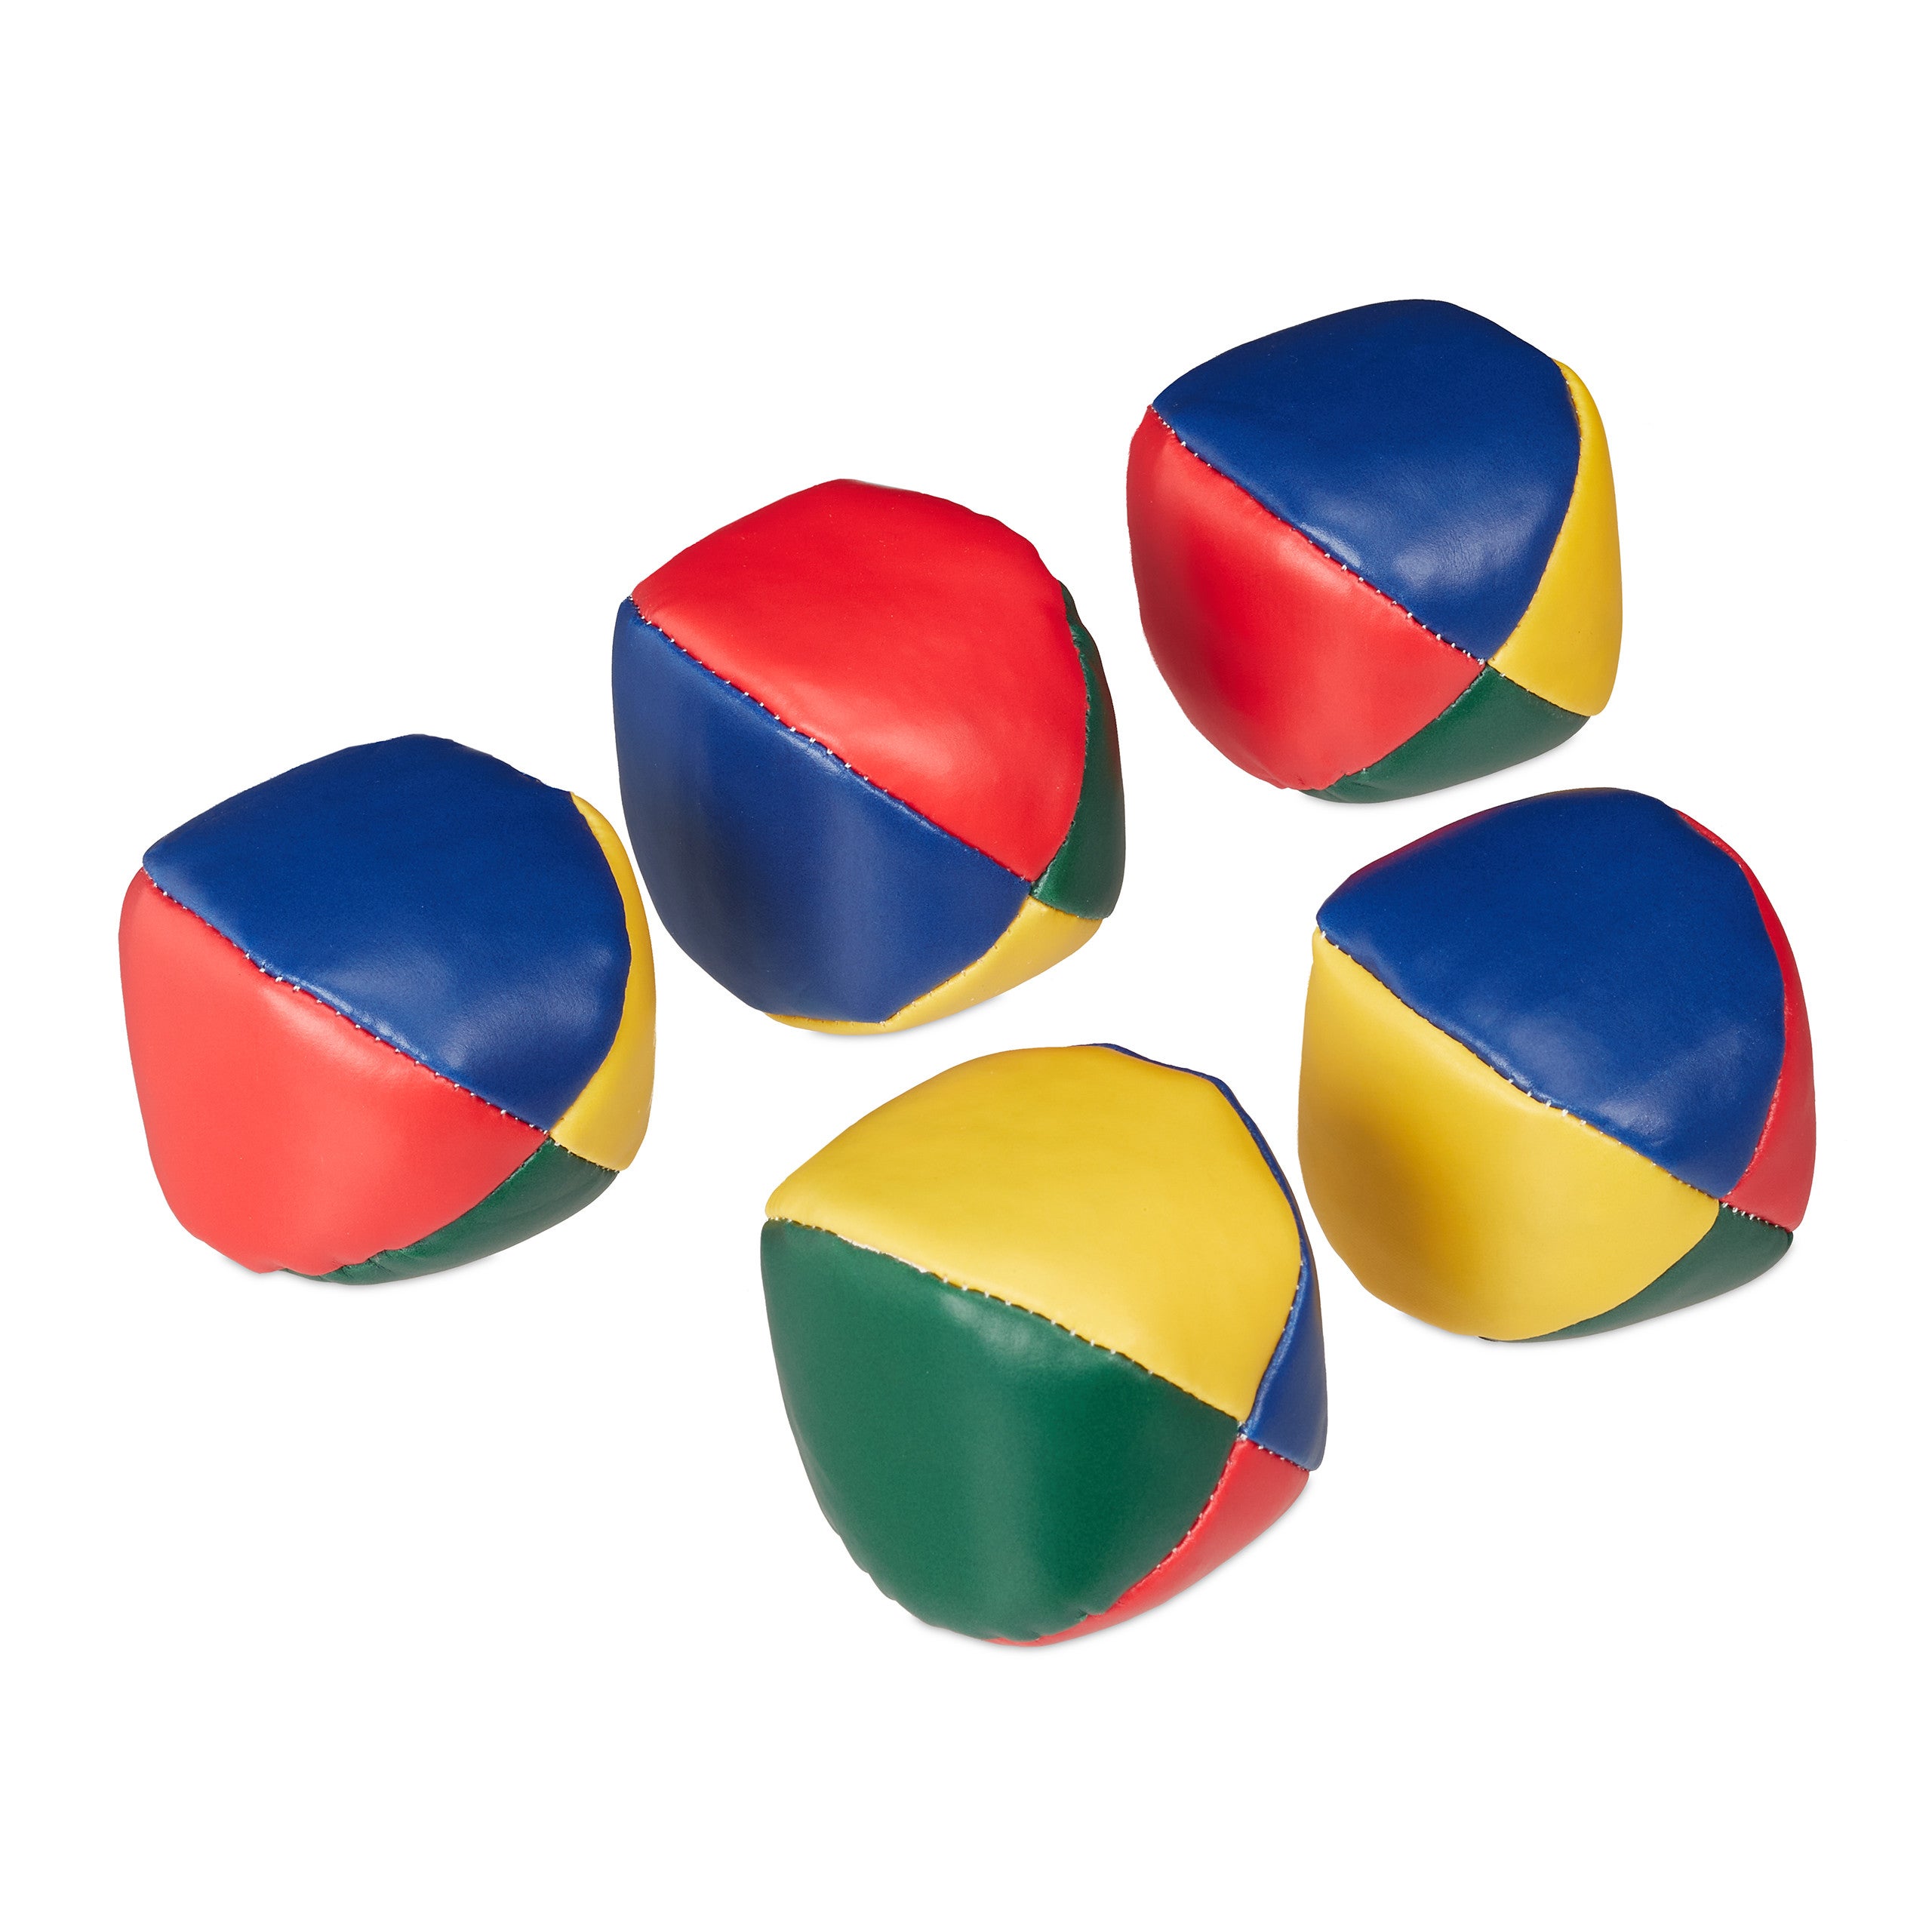 relaxdays Lot de 3 Balle de jonglage, Professionnels et Amateurs, Enfants,  Set Pratique, Ø 6 cm, coloré Adulte Unisexe, Jaune/Vert/Bleu/Rouge